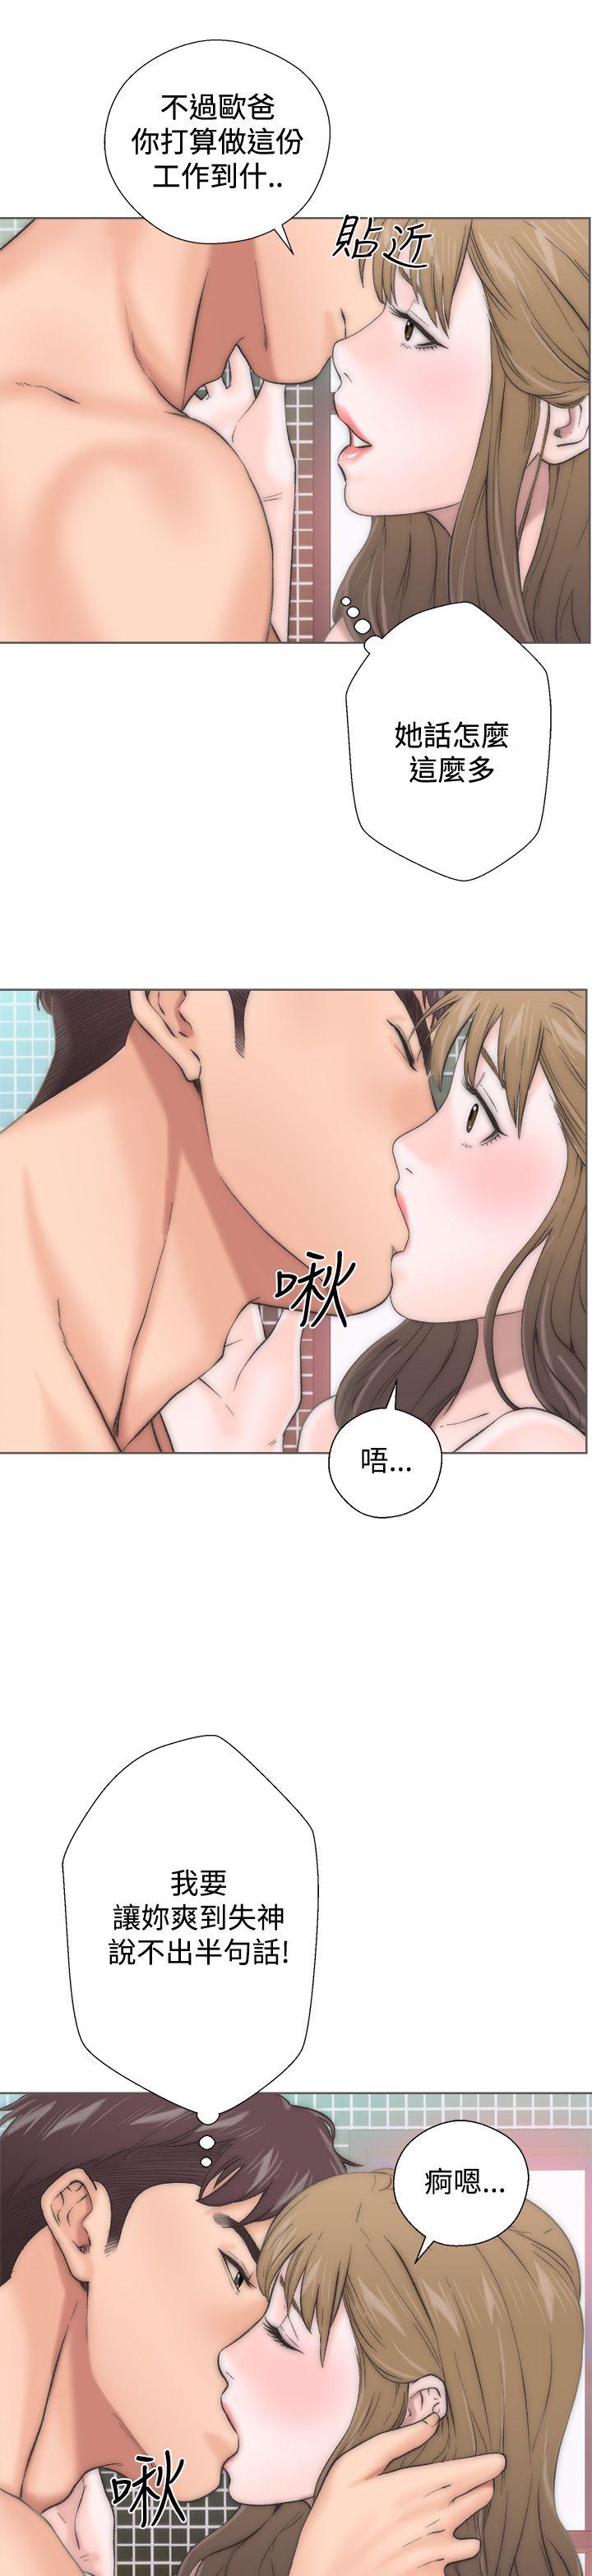 韩国污漫画 青春:逆齡小鮮肉 第2话 15